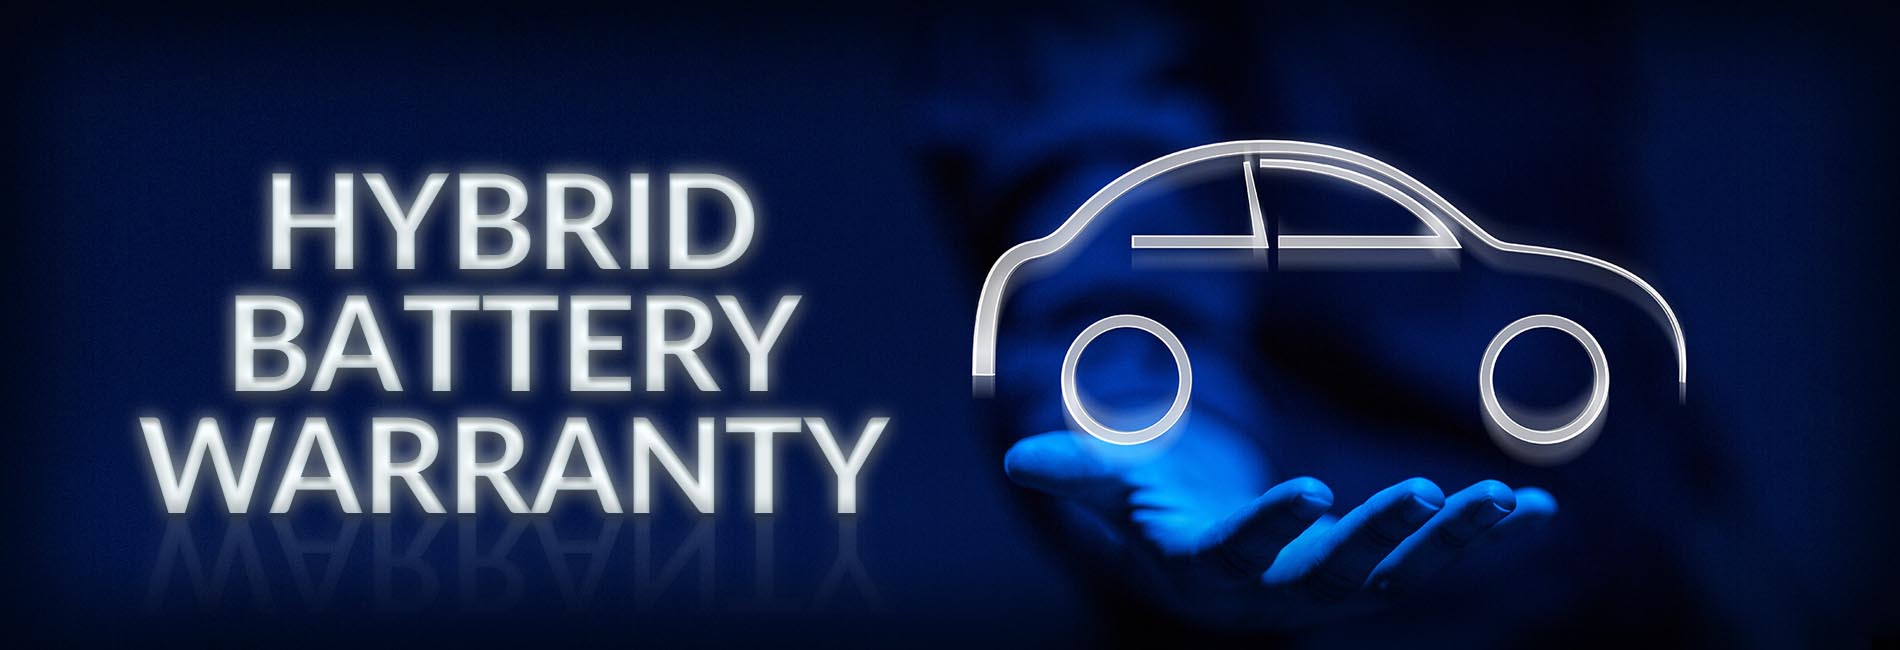 Hybrid Battery Logo - Toyota Camry & Prius Hybrid Battery Warranty